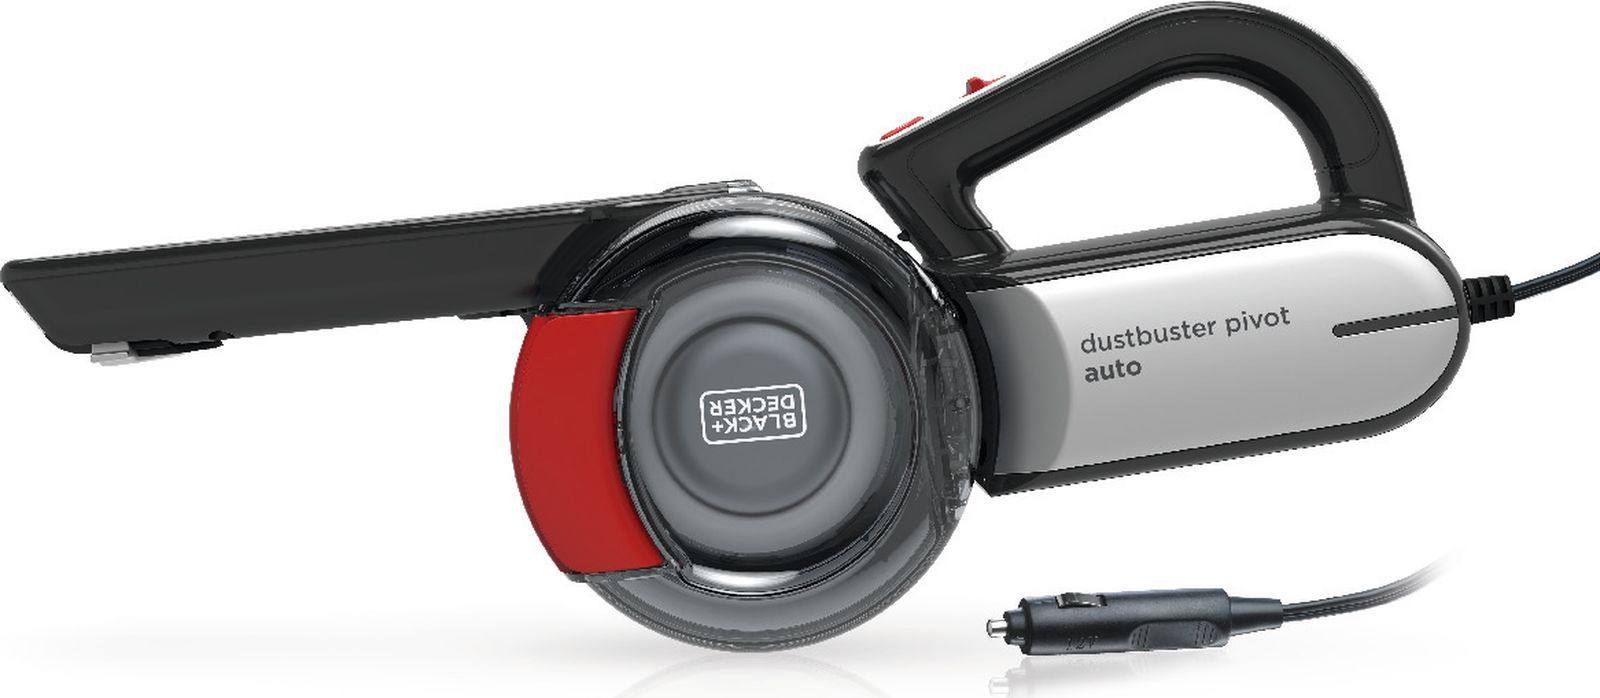   Black & Decker Dustbuster Pivot, 